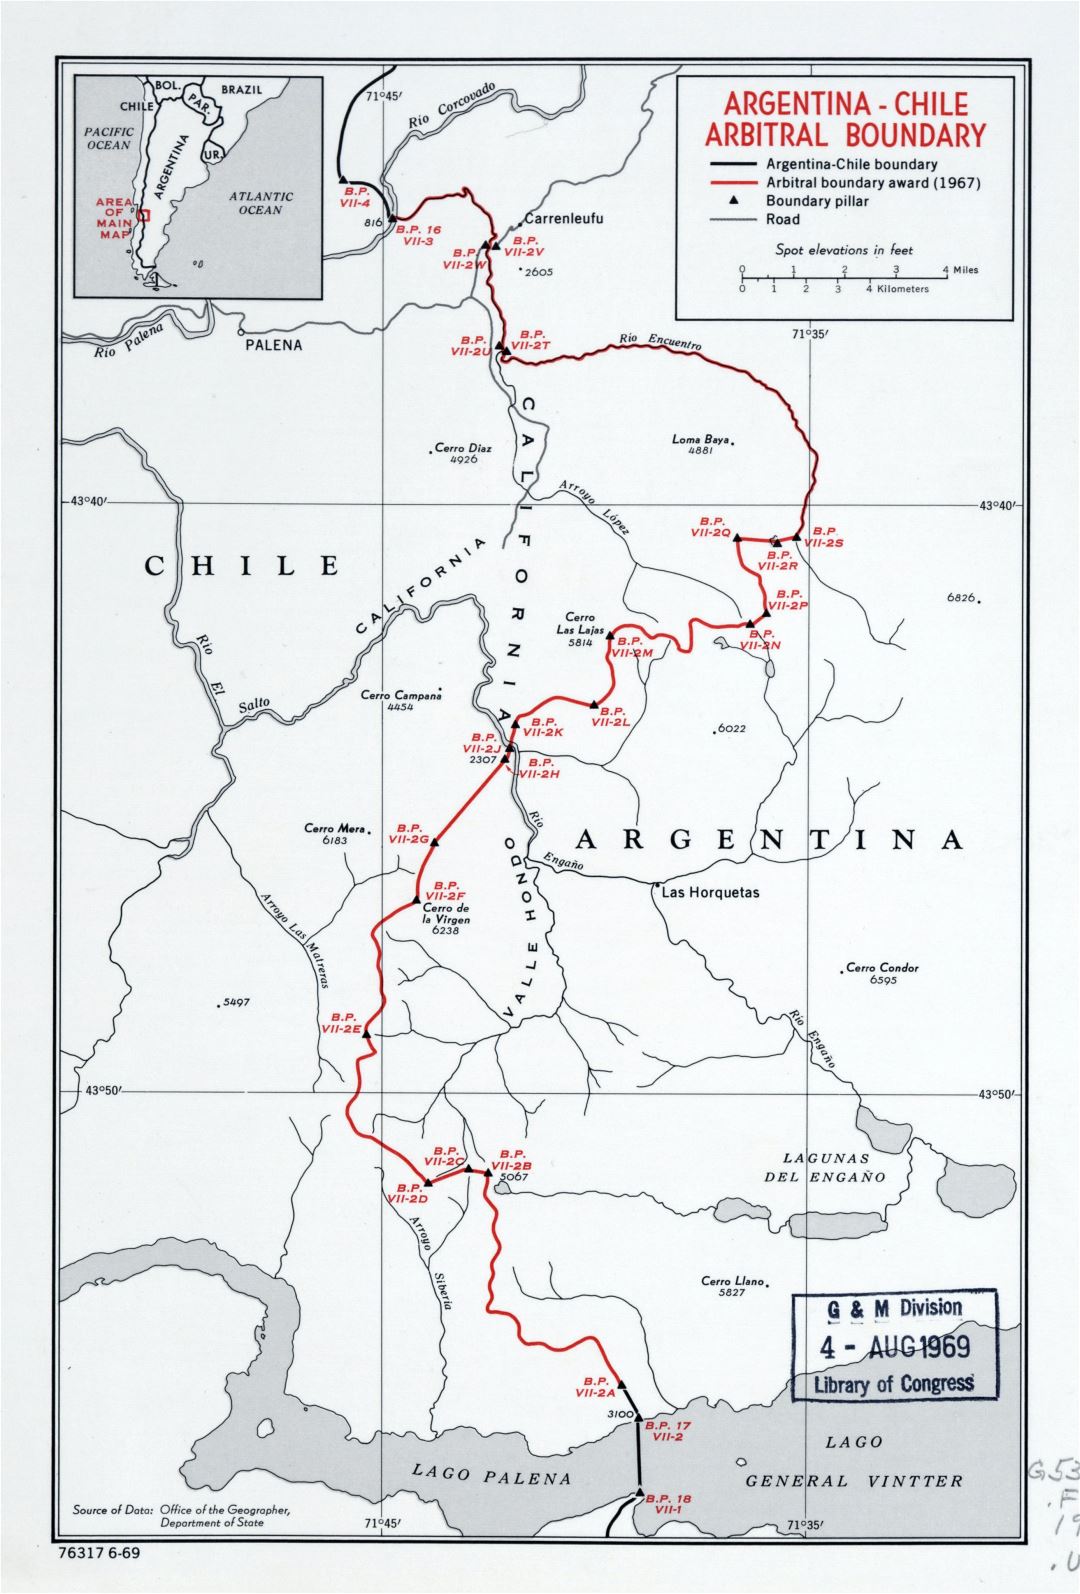 Большая детальная карта арбитражных границ Аргентина-Чили - 1969